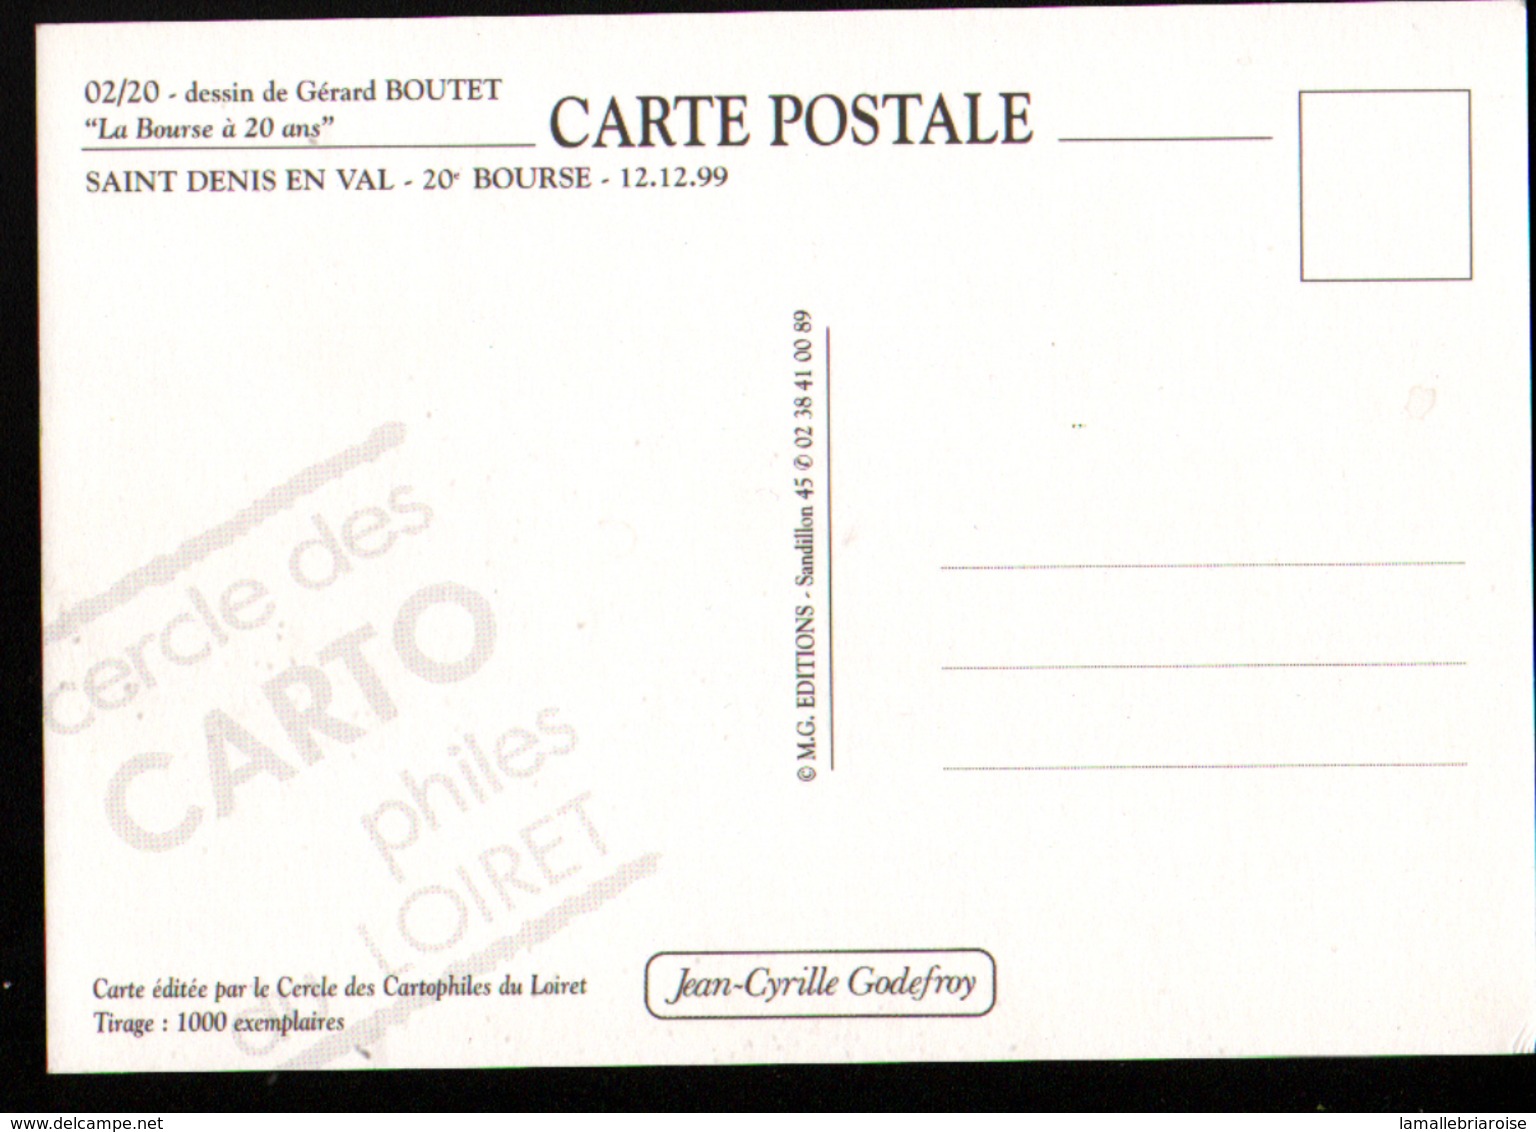 45, 20ème bourse de cartes postales,St Denis en val, 12-12-1999, serie complète de 20 cartes